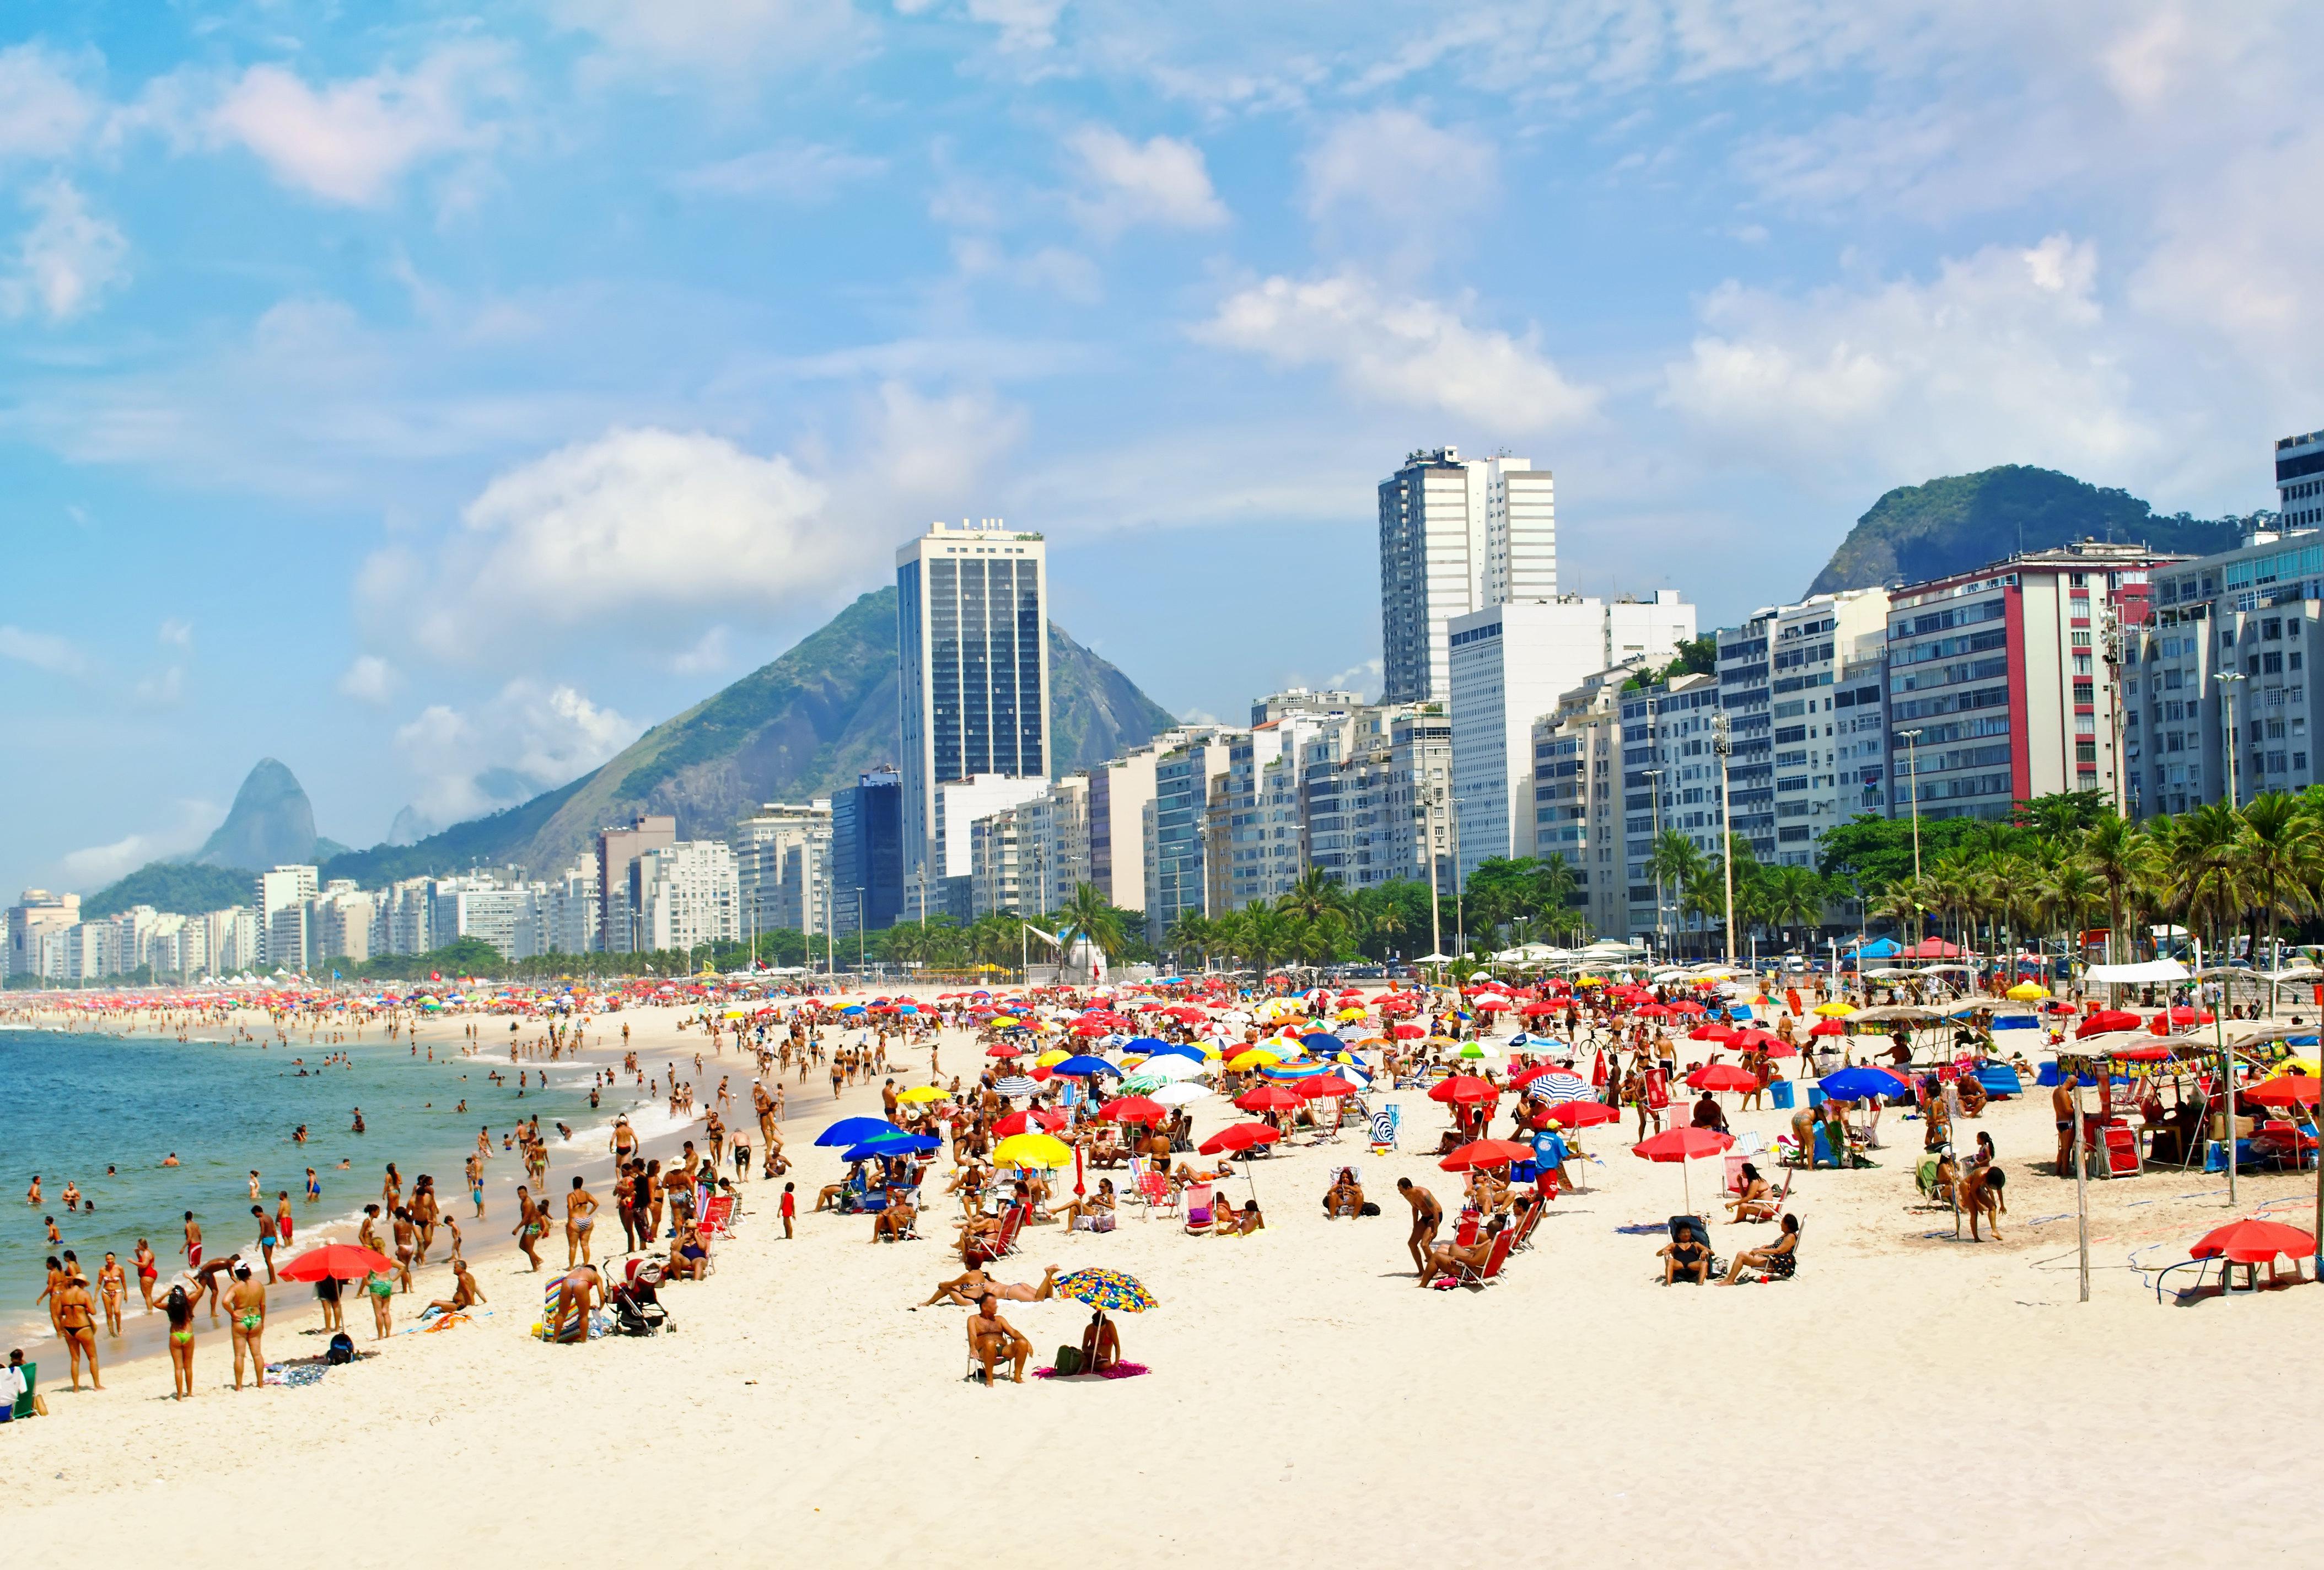 Rio de Janeiro Travel Guide: 4 Days of Beaches, Dancing, and